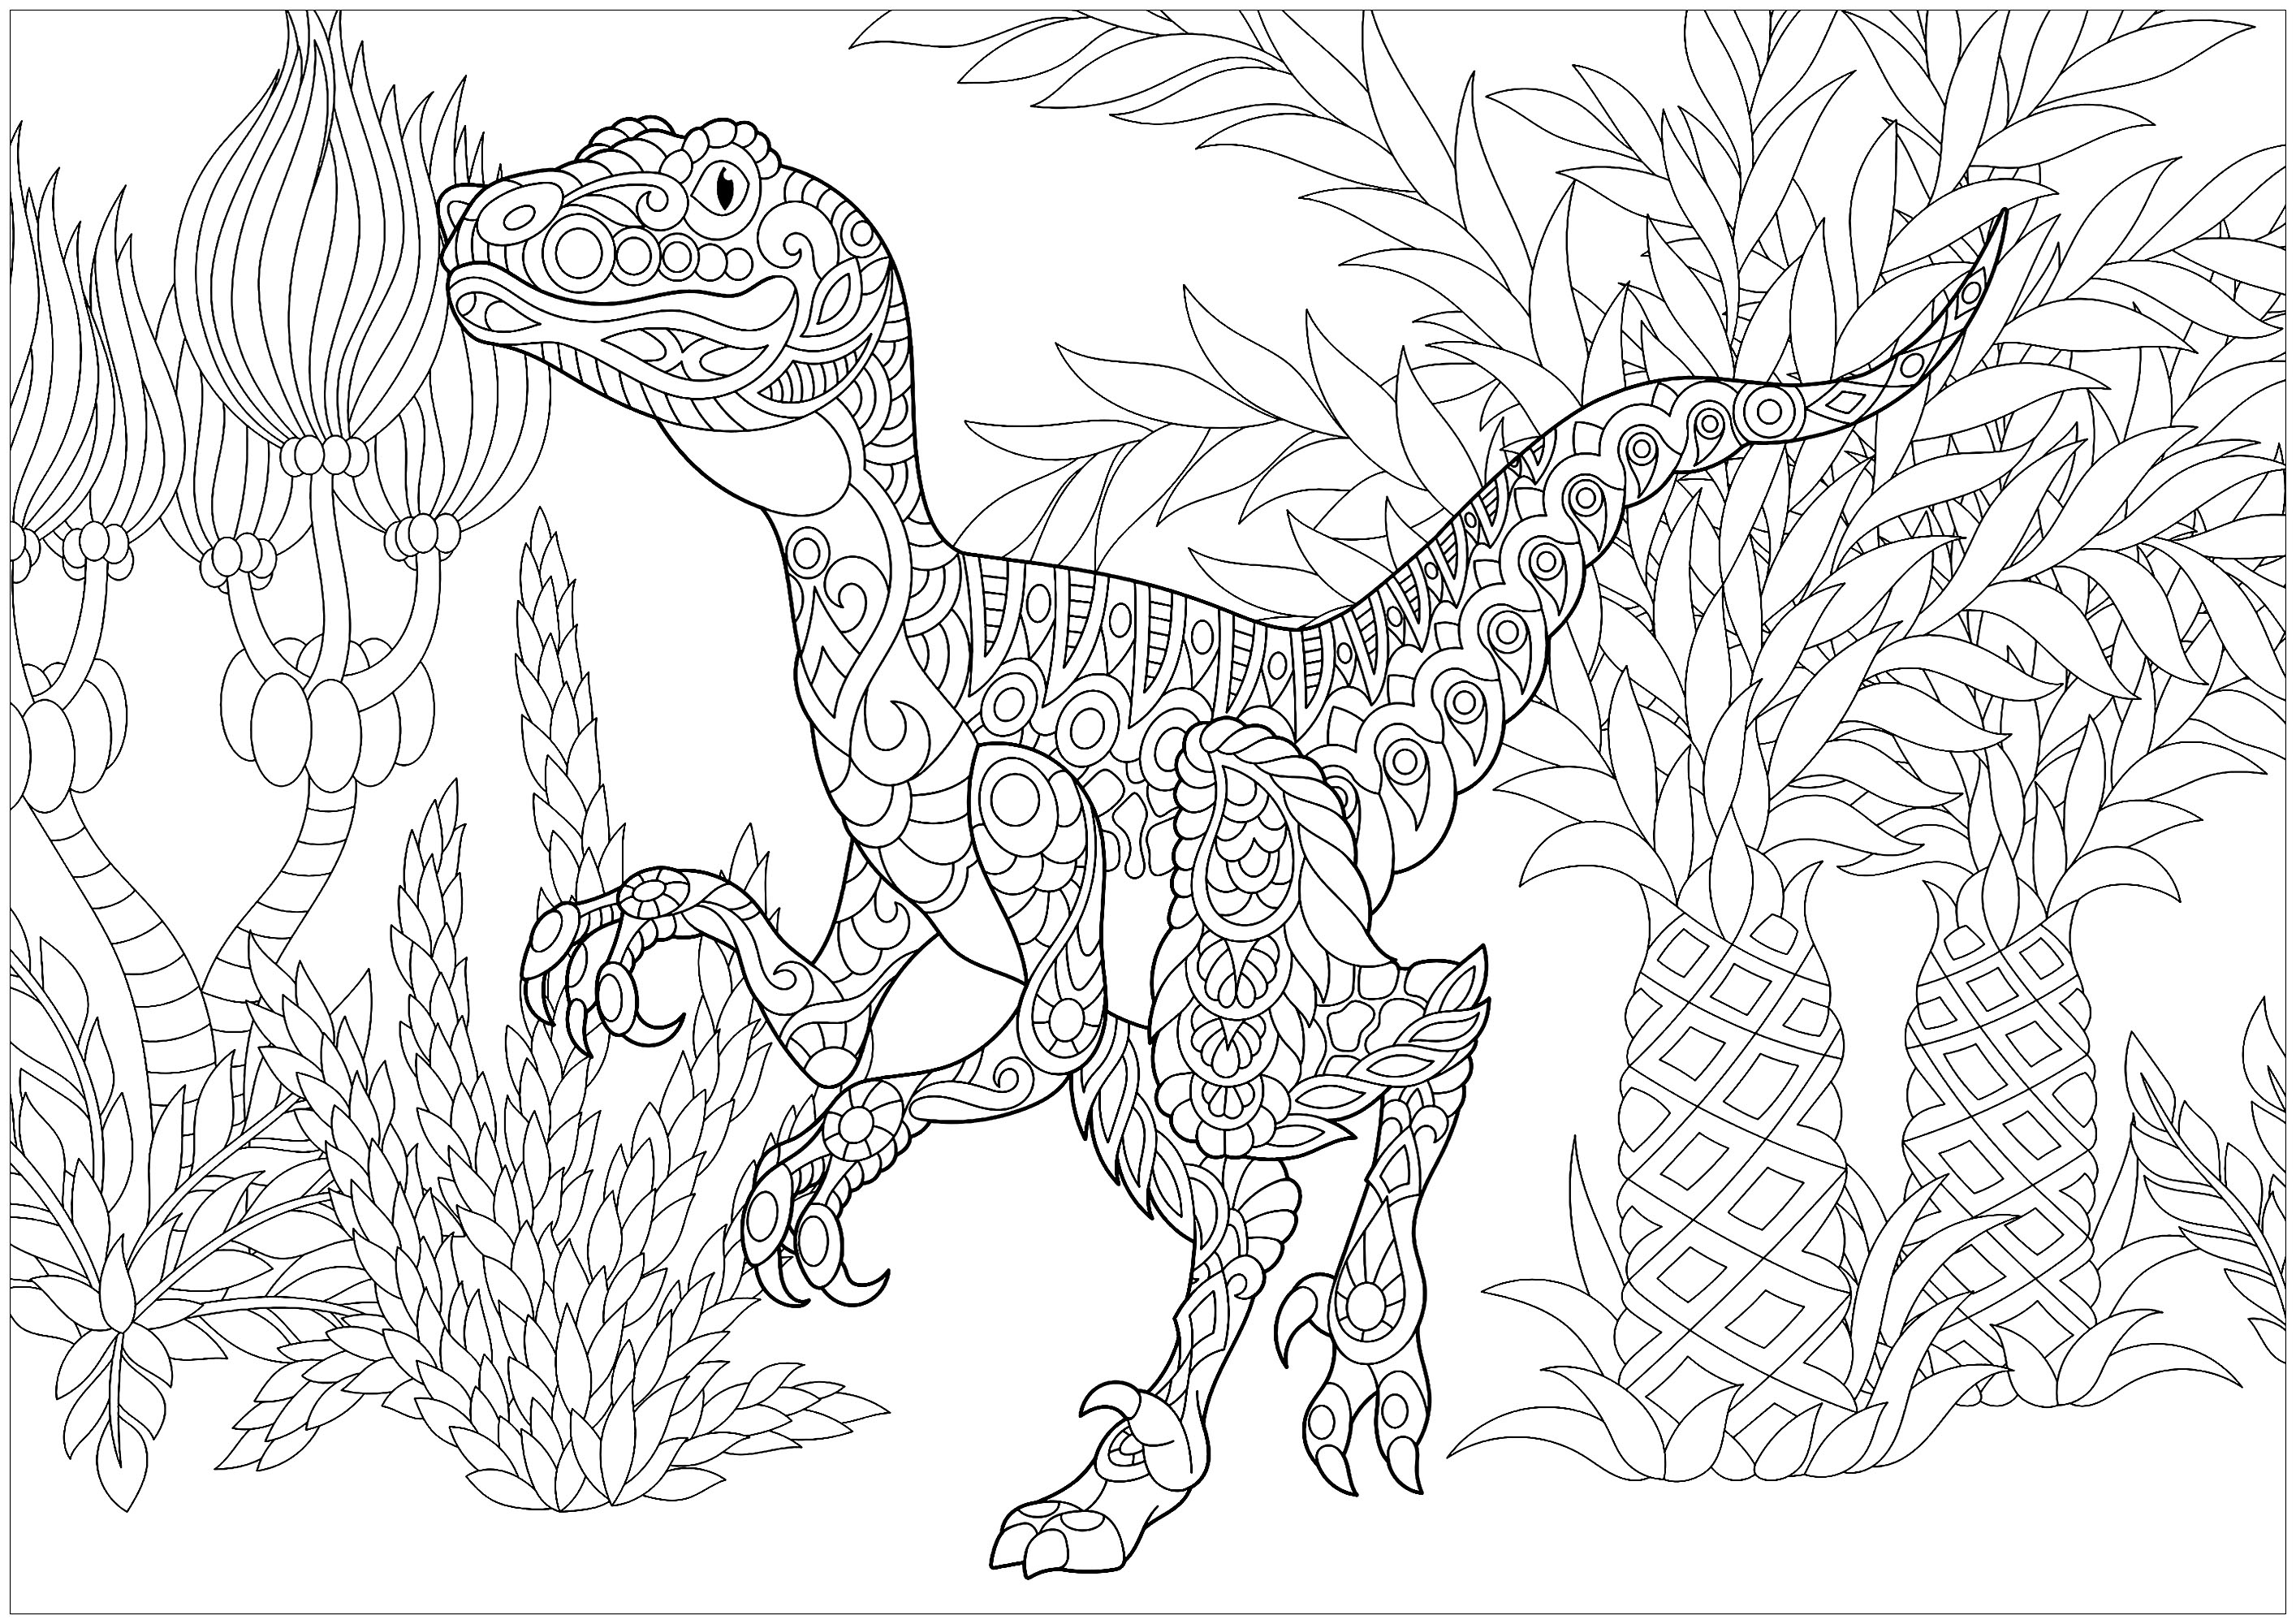 Desenhos grátis para colorir de Dinossauros para baixar, Artista : Sybirko   Fonte : 123rf